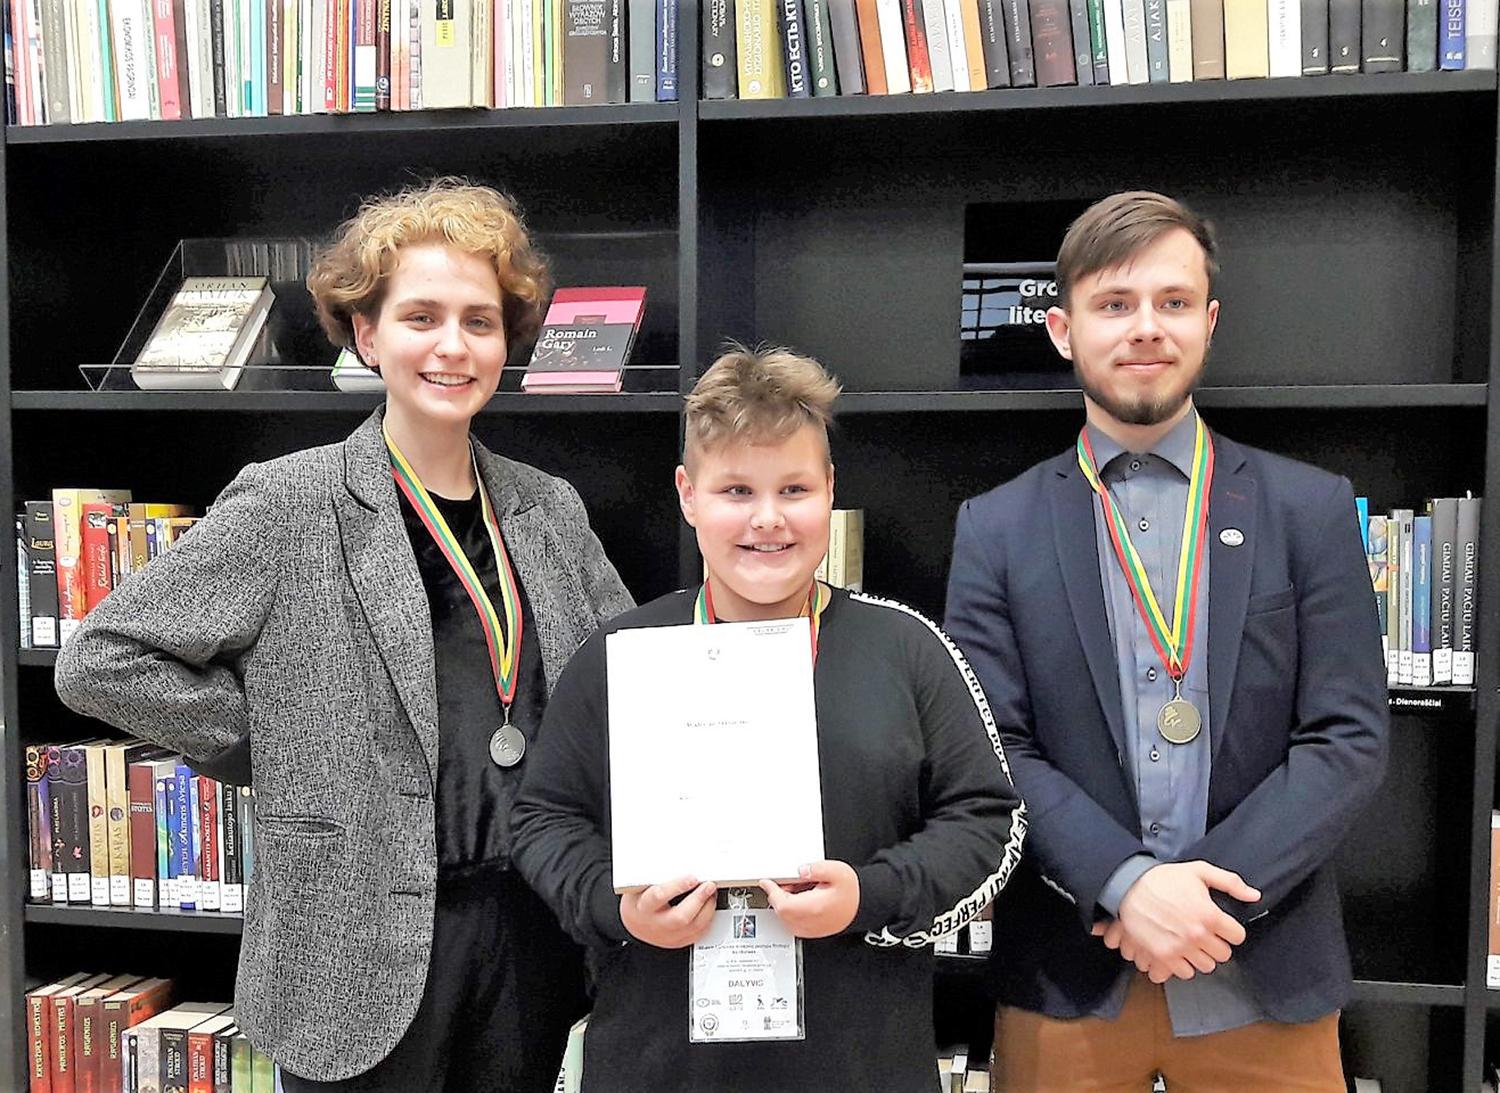 Iš filologų konkurso grįžo su medaliais / Ukmergiškiai – Lietuvos mokinių jaunųjų filologų konkurso laureatai.